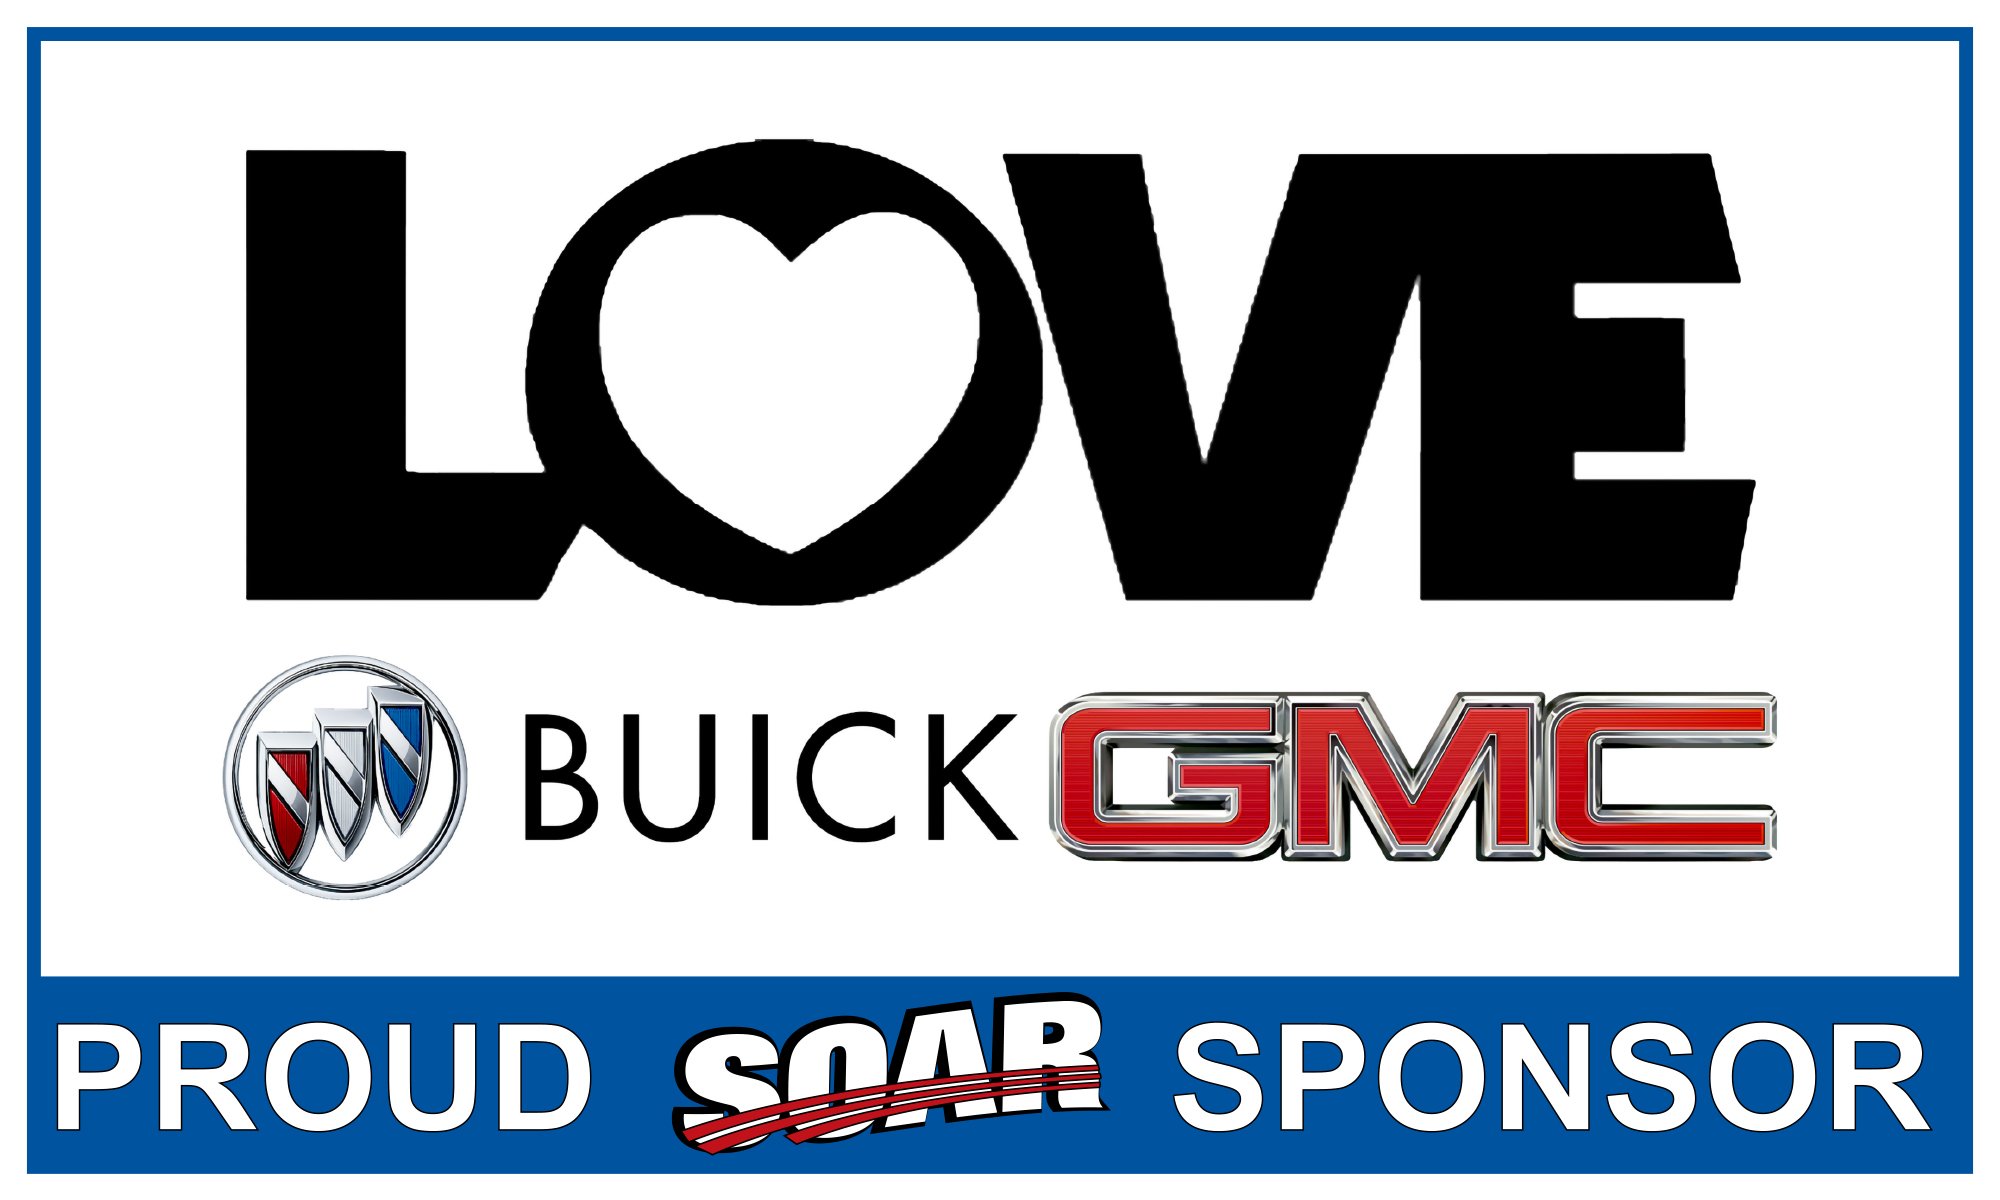 Love Buick GMC sponsor banner.jpg